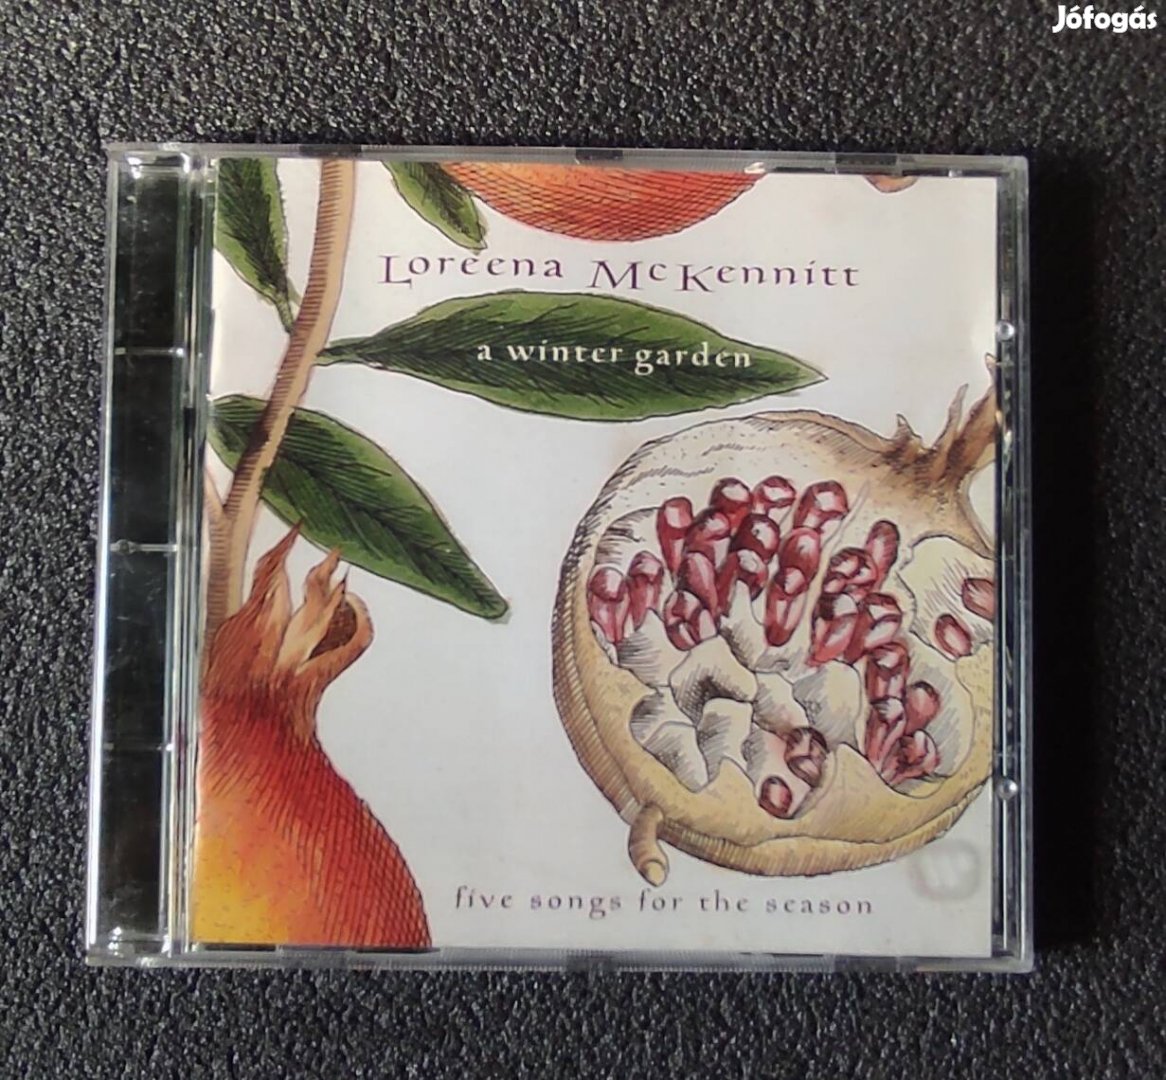 Lorenna Mckennitt:A winter Gardena cd 1995